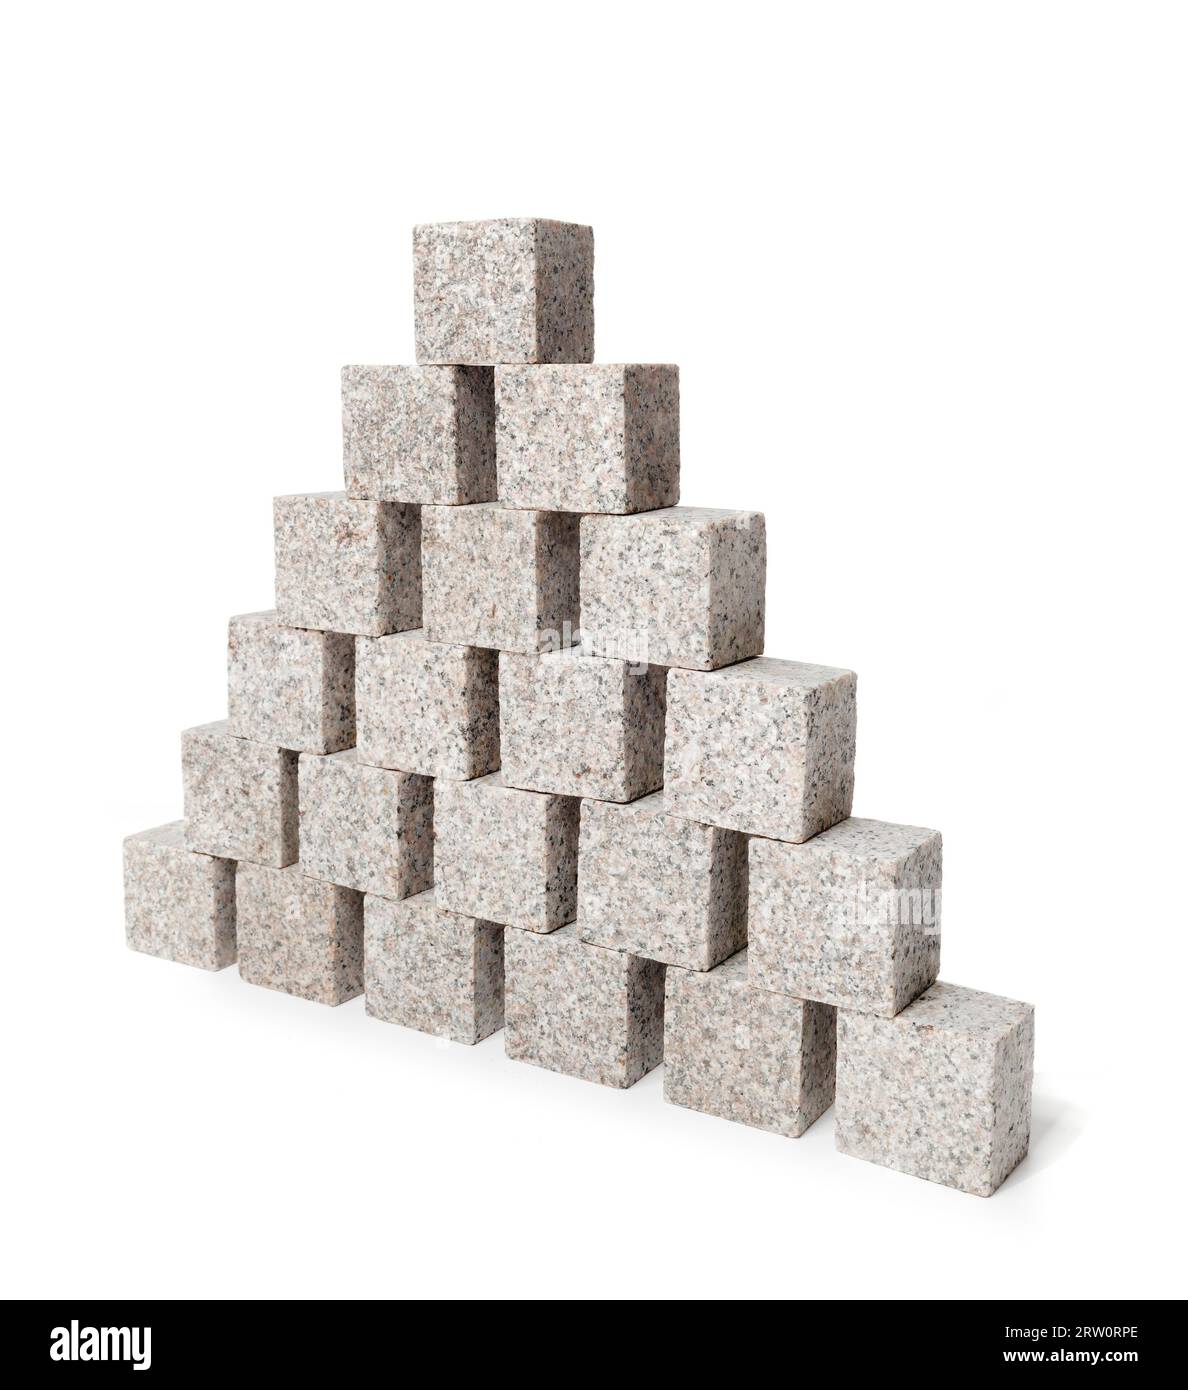 Pyramide faite de petits blocs de roche de granit Banque D'Images